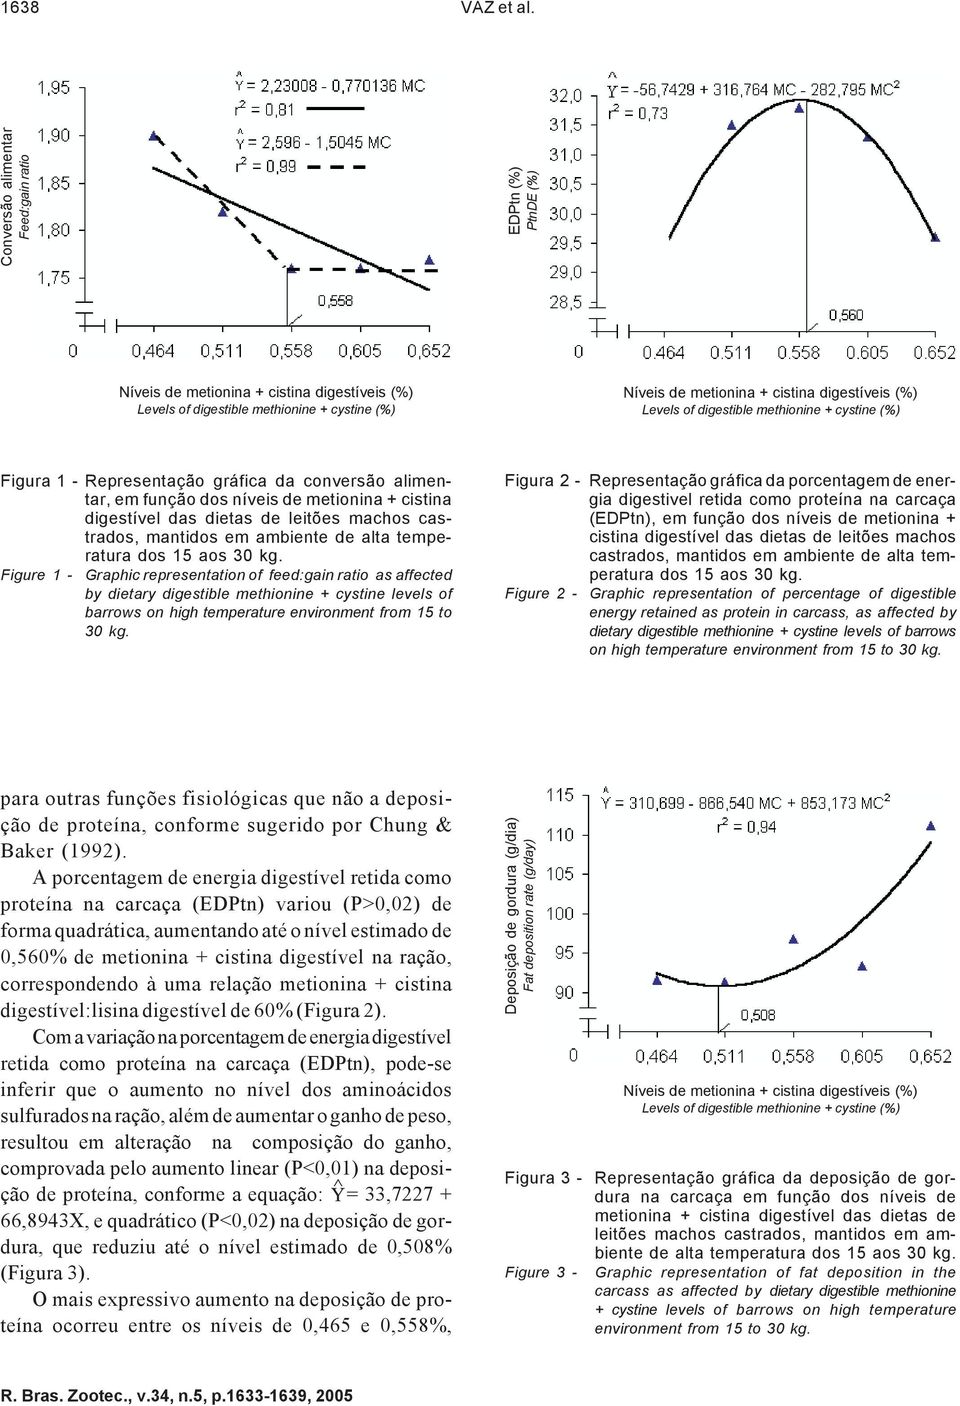 Levels of digestible methionine + cystine (%) Figura 1 - Representação gráfica da conversão alimentar, em função dos níveis de metionina + cistina digestível das dietas de leitões machos castrados,